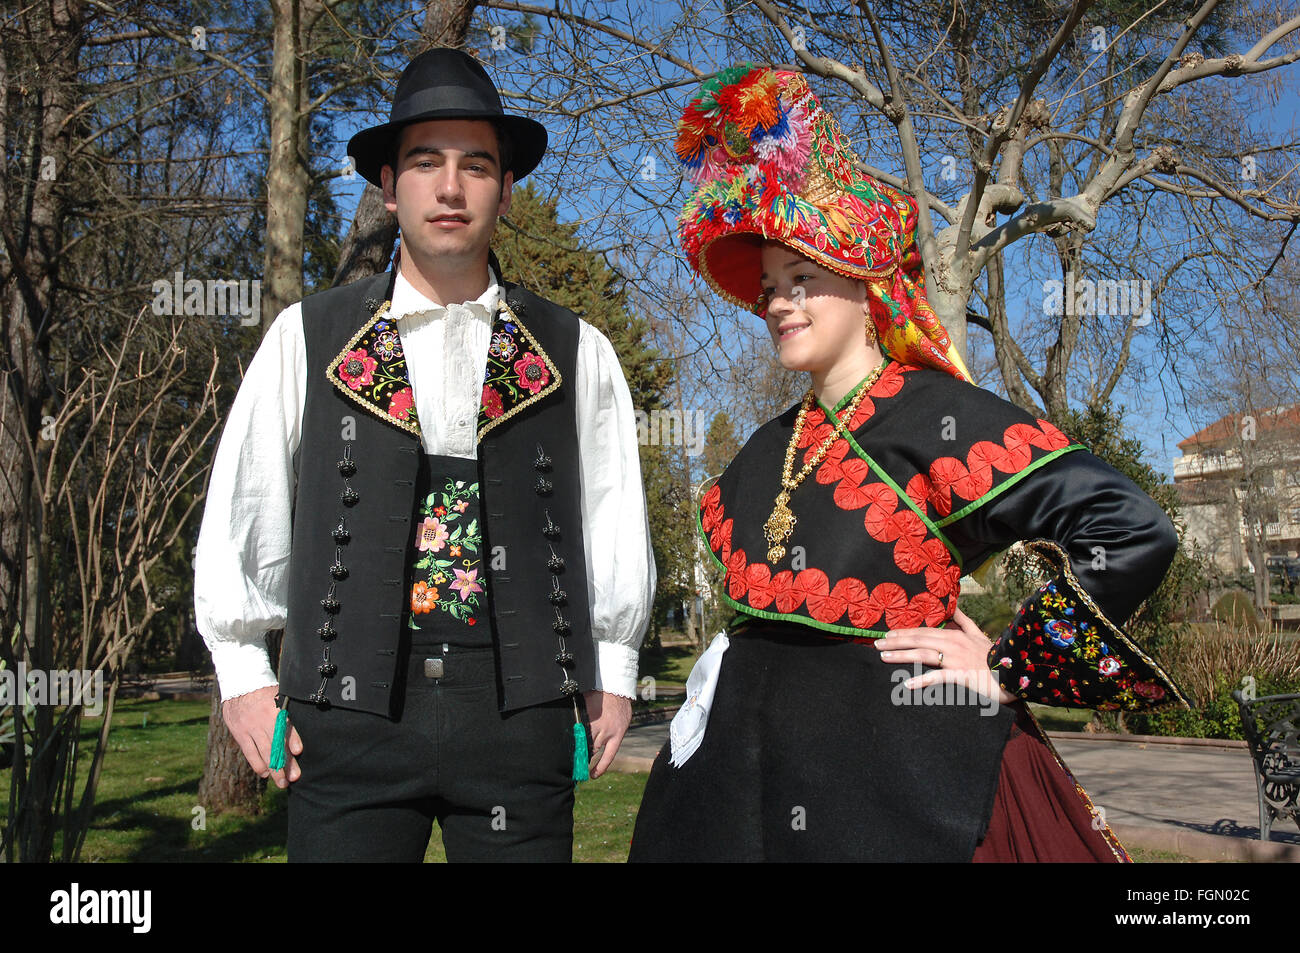 Costumes folkloriques typiques, Montehermoso, Caceres province, région de l'Estrémadure, Espagne, Europe Banque D'Images